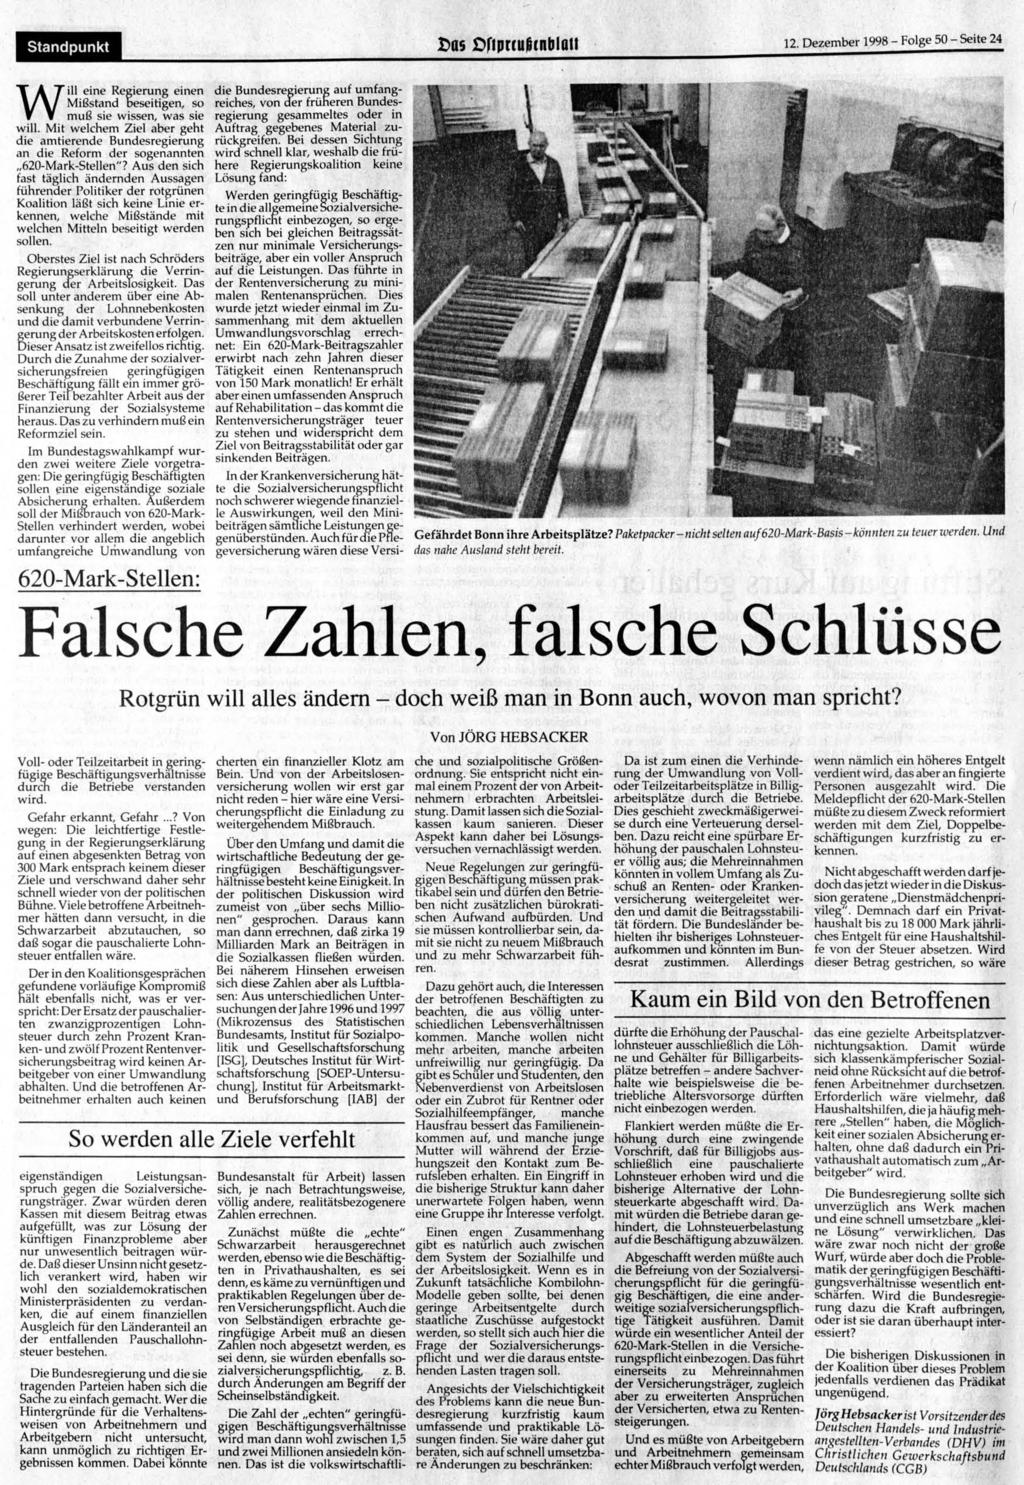 Standpunkt t>as?f!prcußcnbiaii 12. Dezember 1998- Folge 50-Seite 24 Will eine Regierung einen Mißstand beseitigen, so muß sie wissen, was sie will.